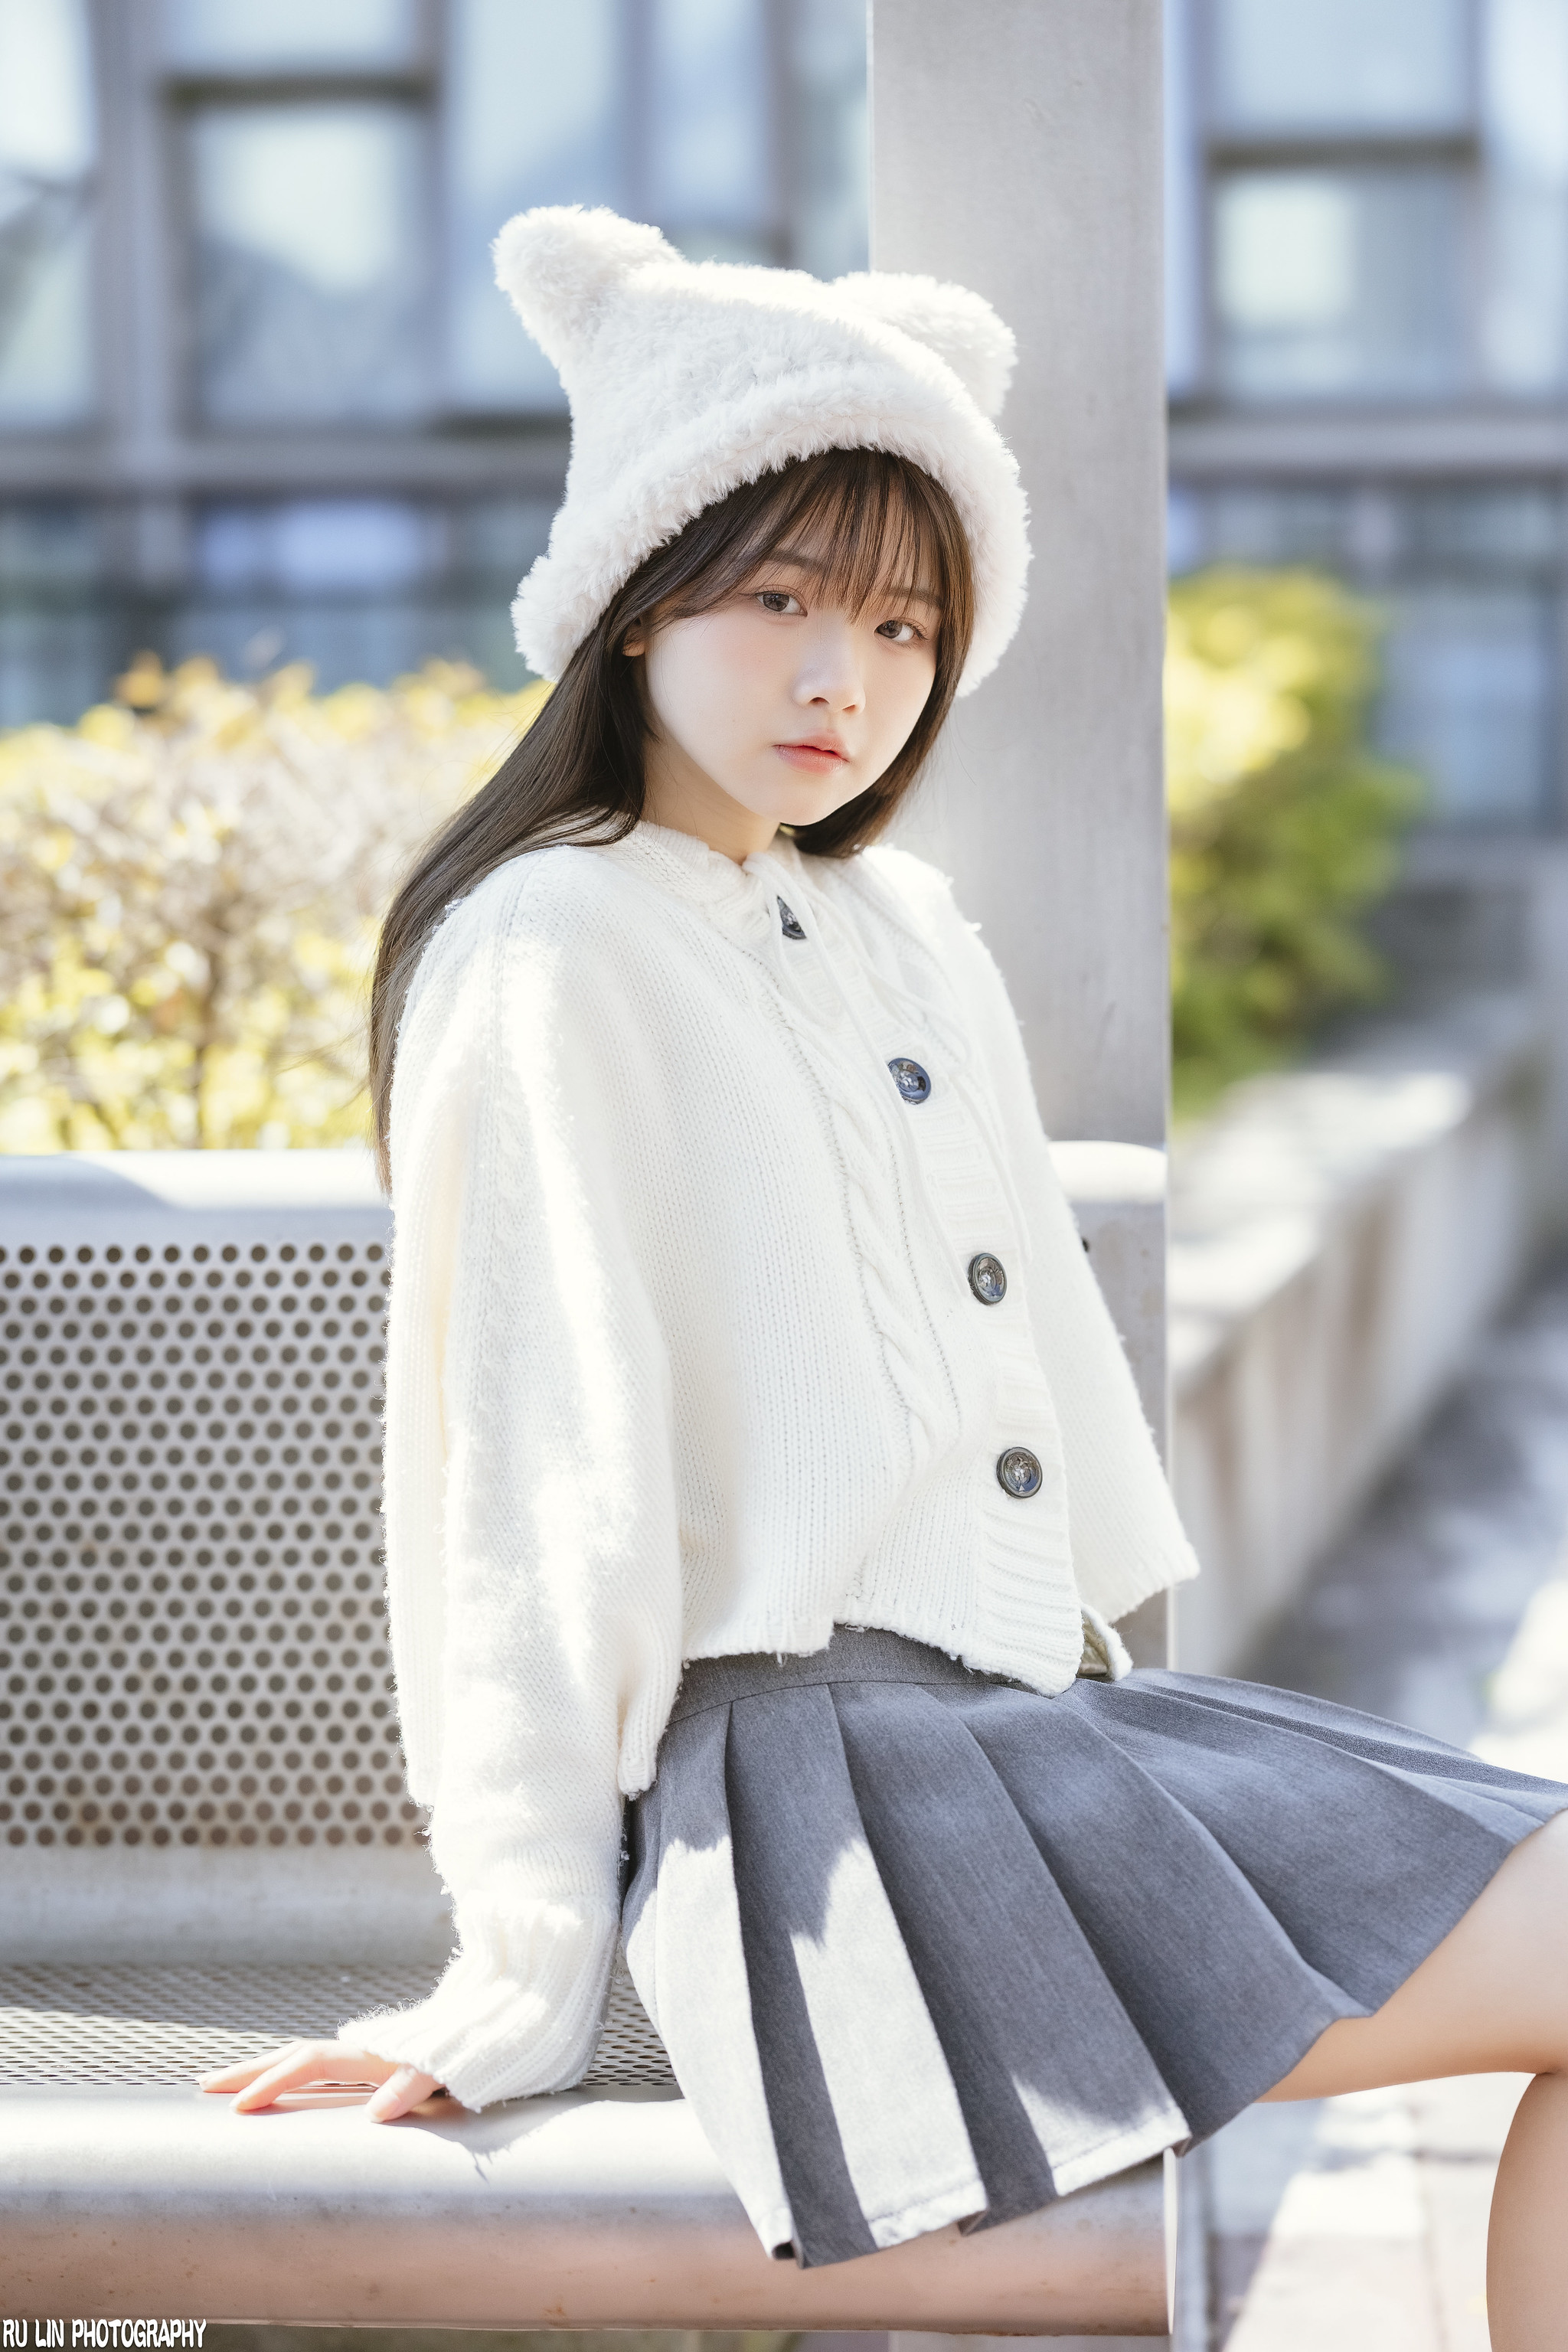 Ru Lin Women Asian Hat White Skirt Brunette Outdoors Looking At Viewer 2048x3072